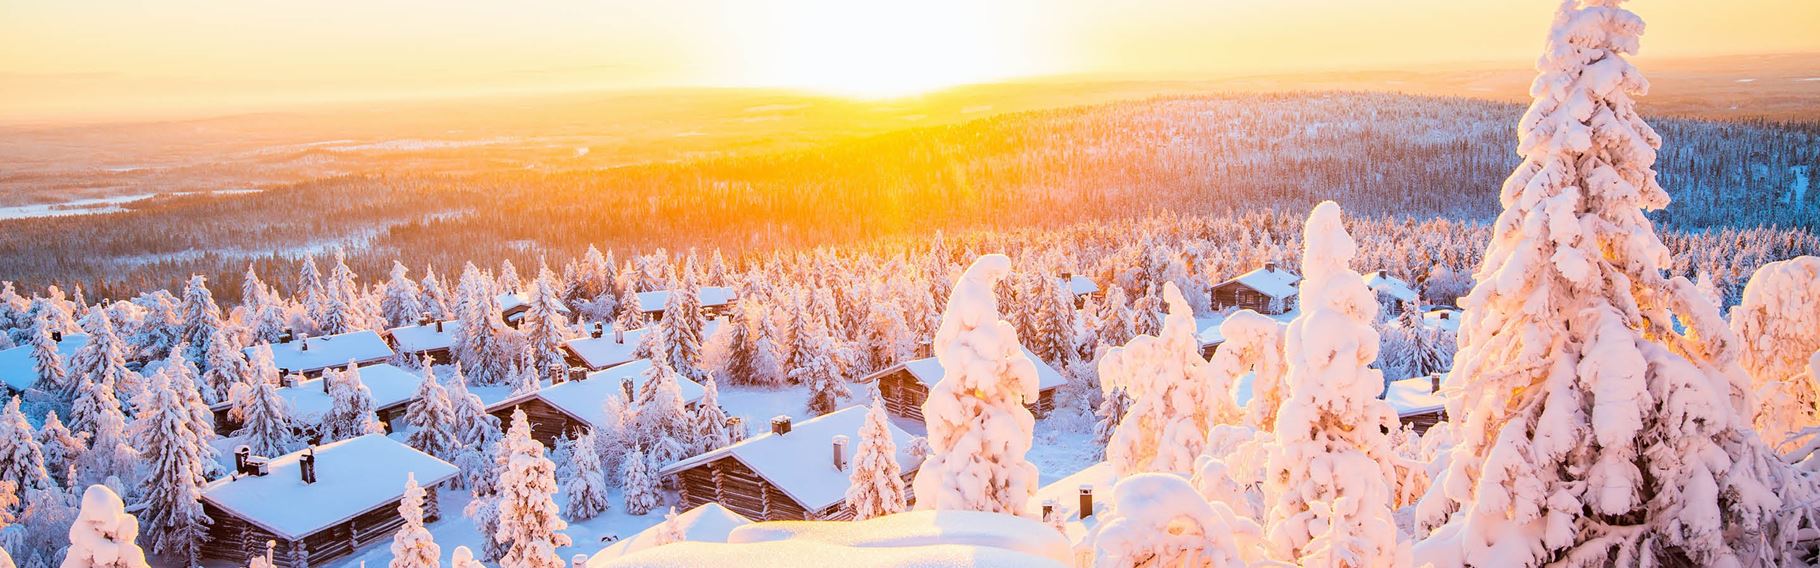 solopgang over finsk lapland